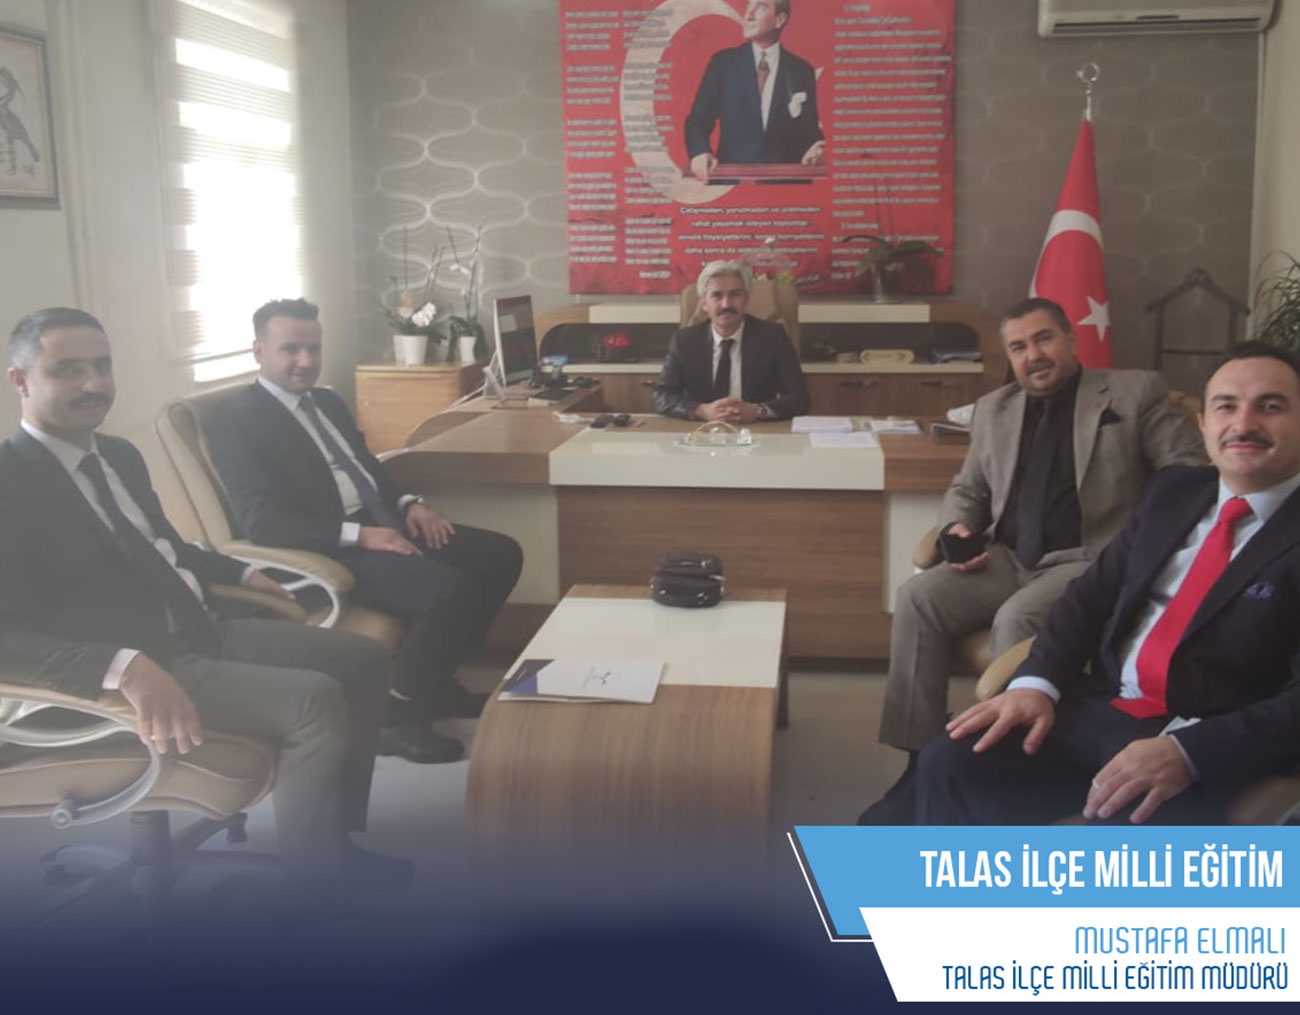 Talas İlçe Milli Eğitim Müdürümüz Mustafa Elmalı Bey'i ziyaret ettik.